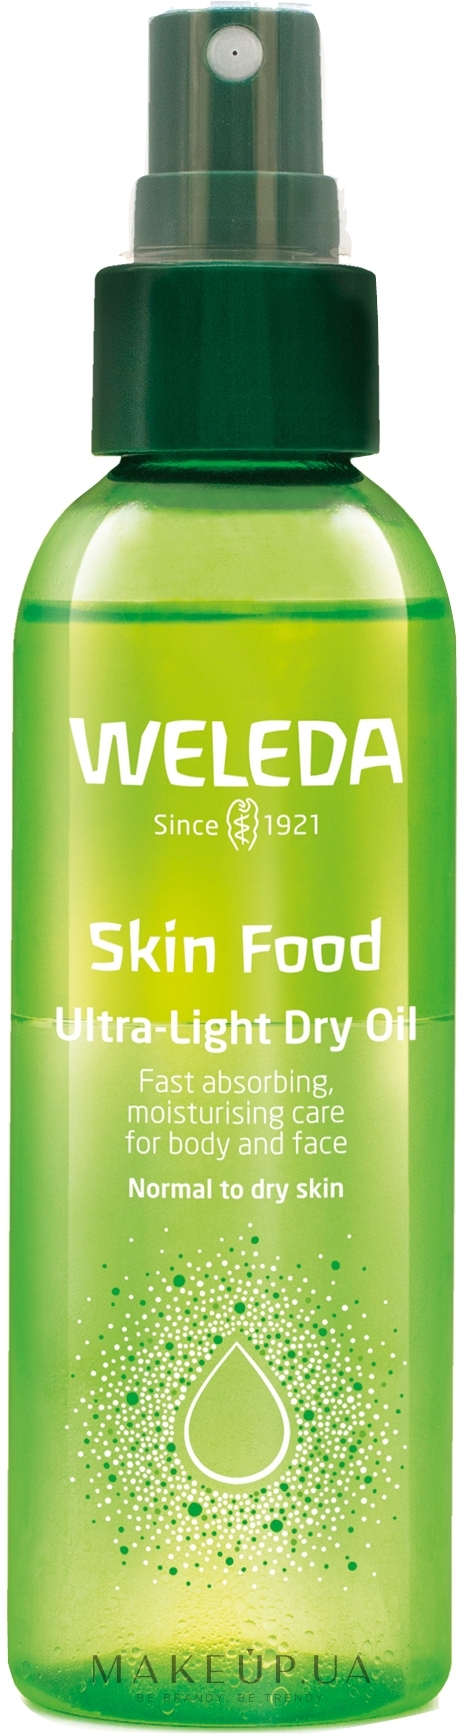 Skin Food Ultra-Light Dry Oil